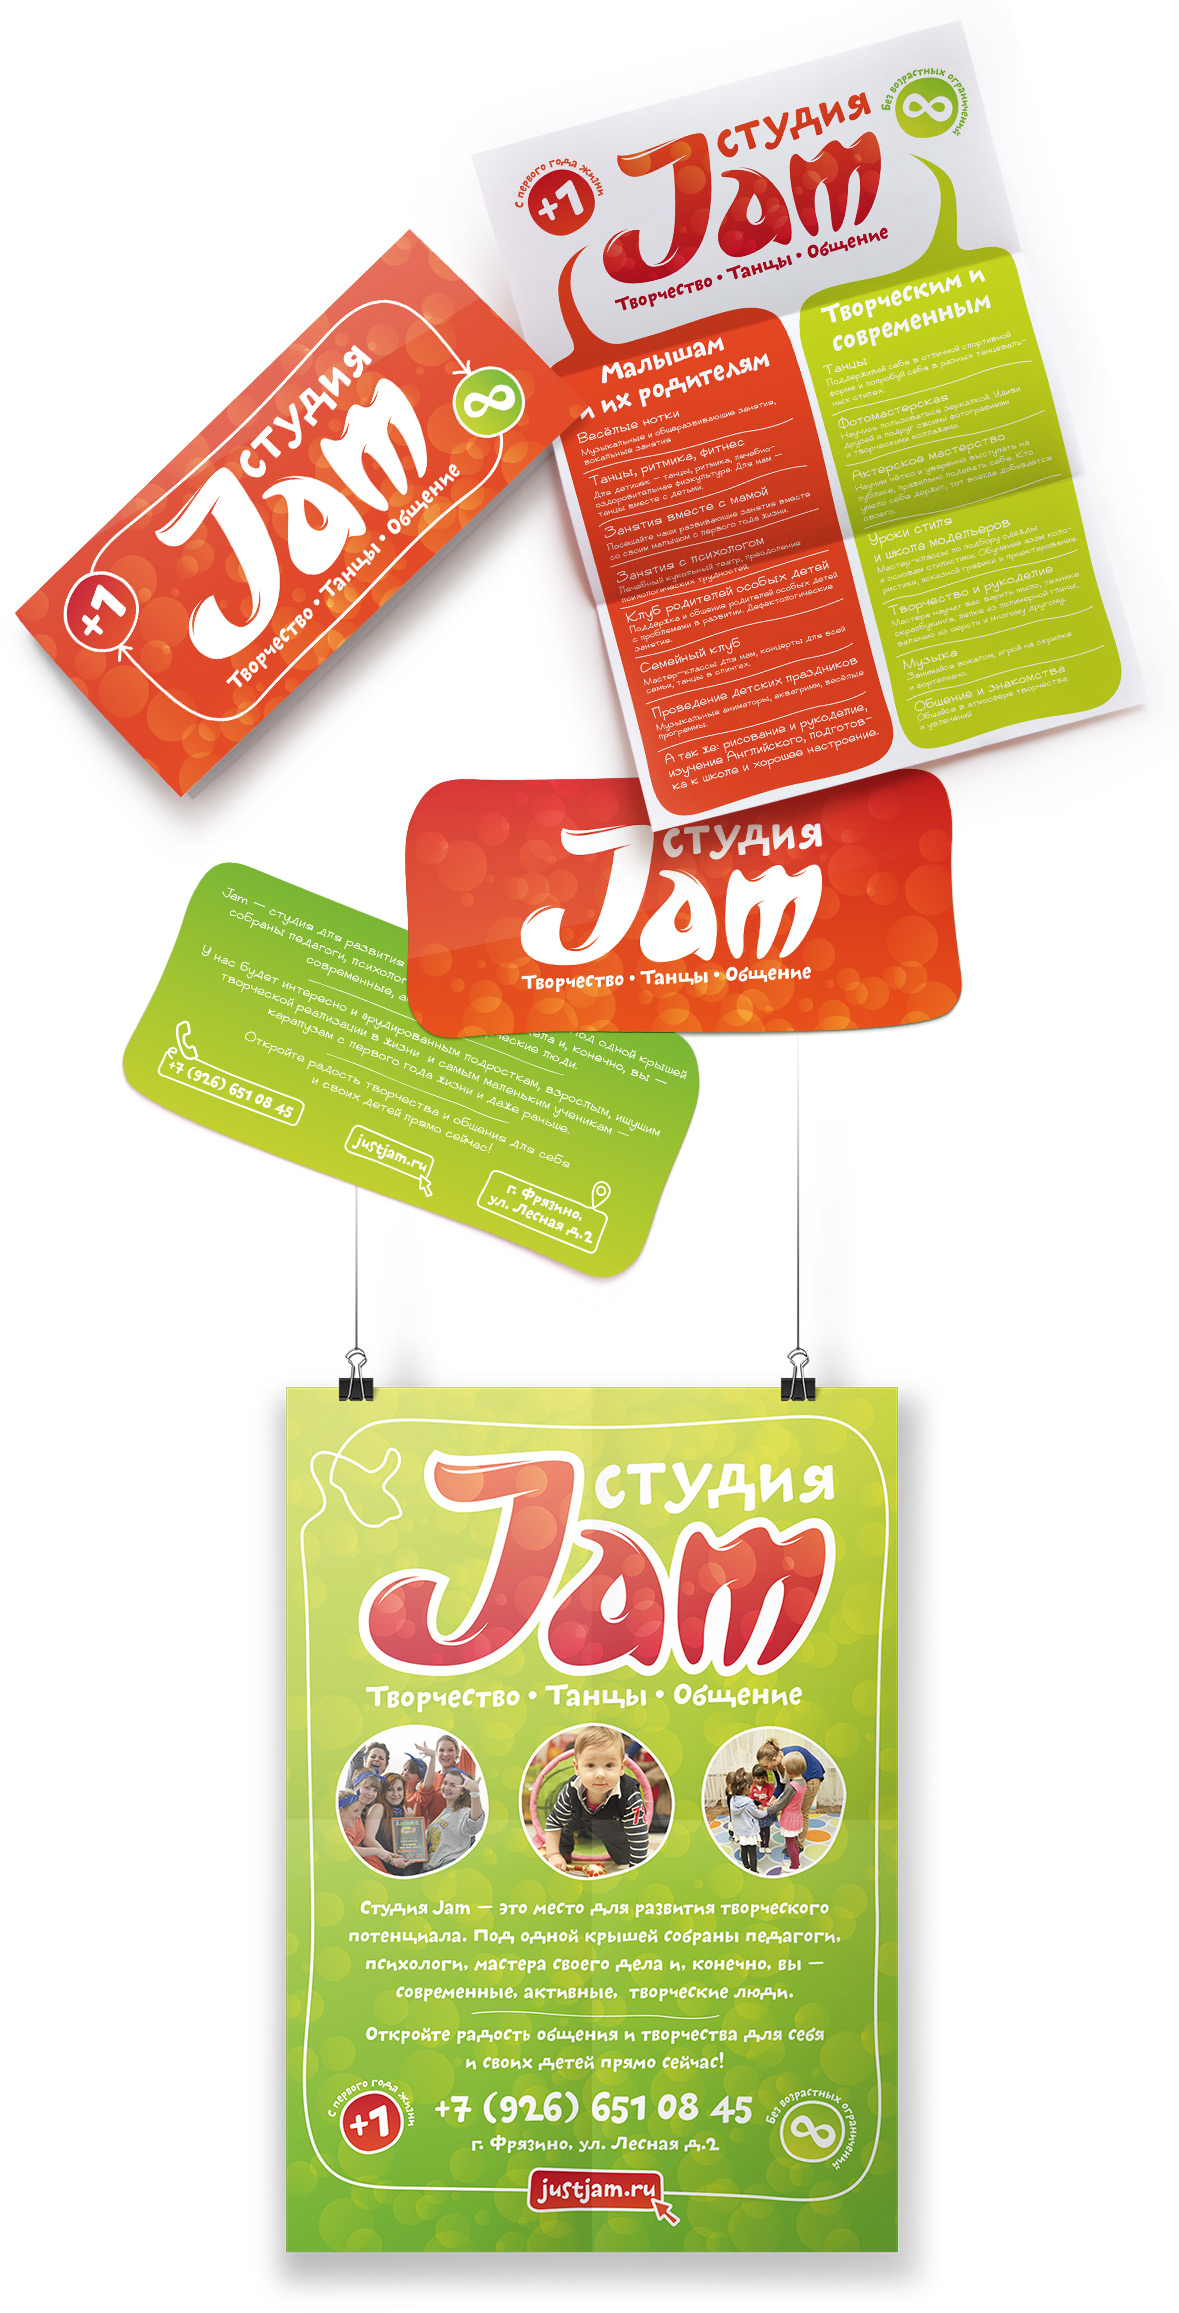 Дизайн фирменного стиля для студии «Jam» во Фрязино